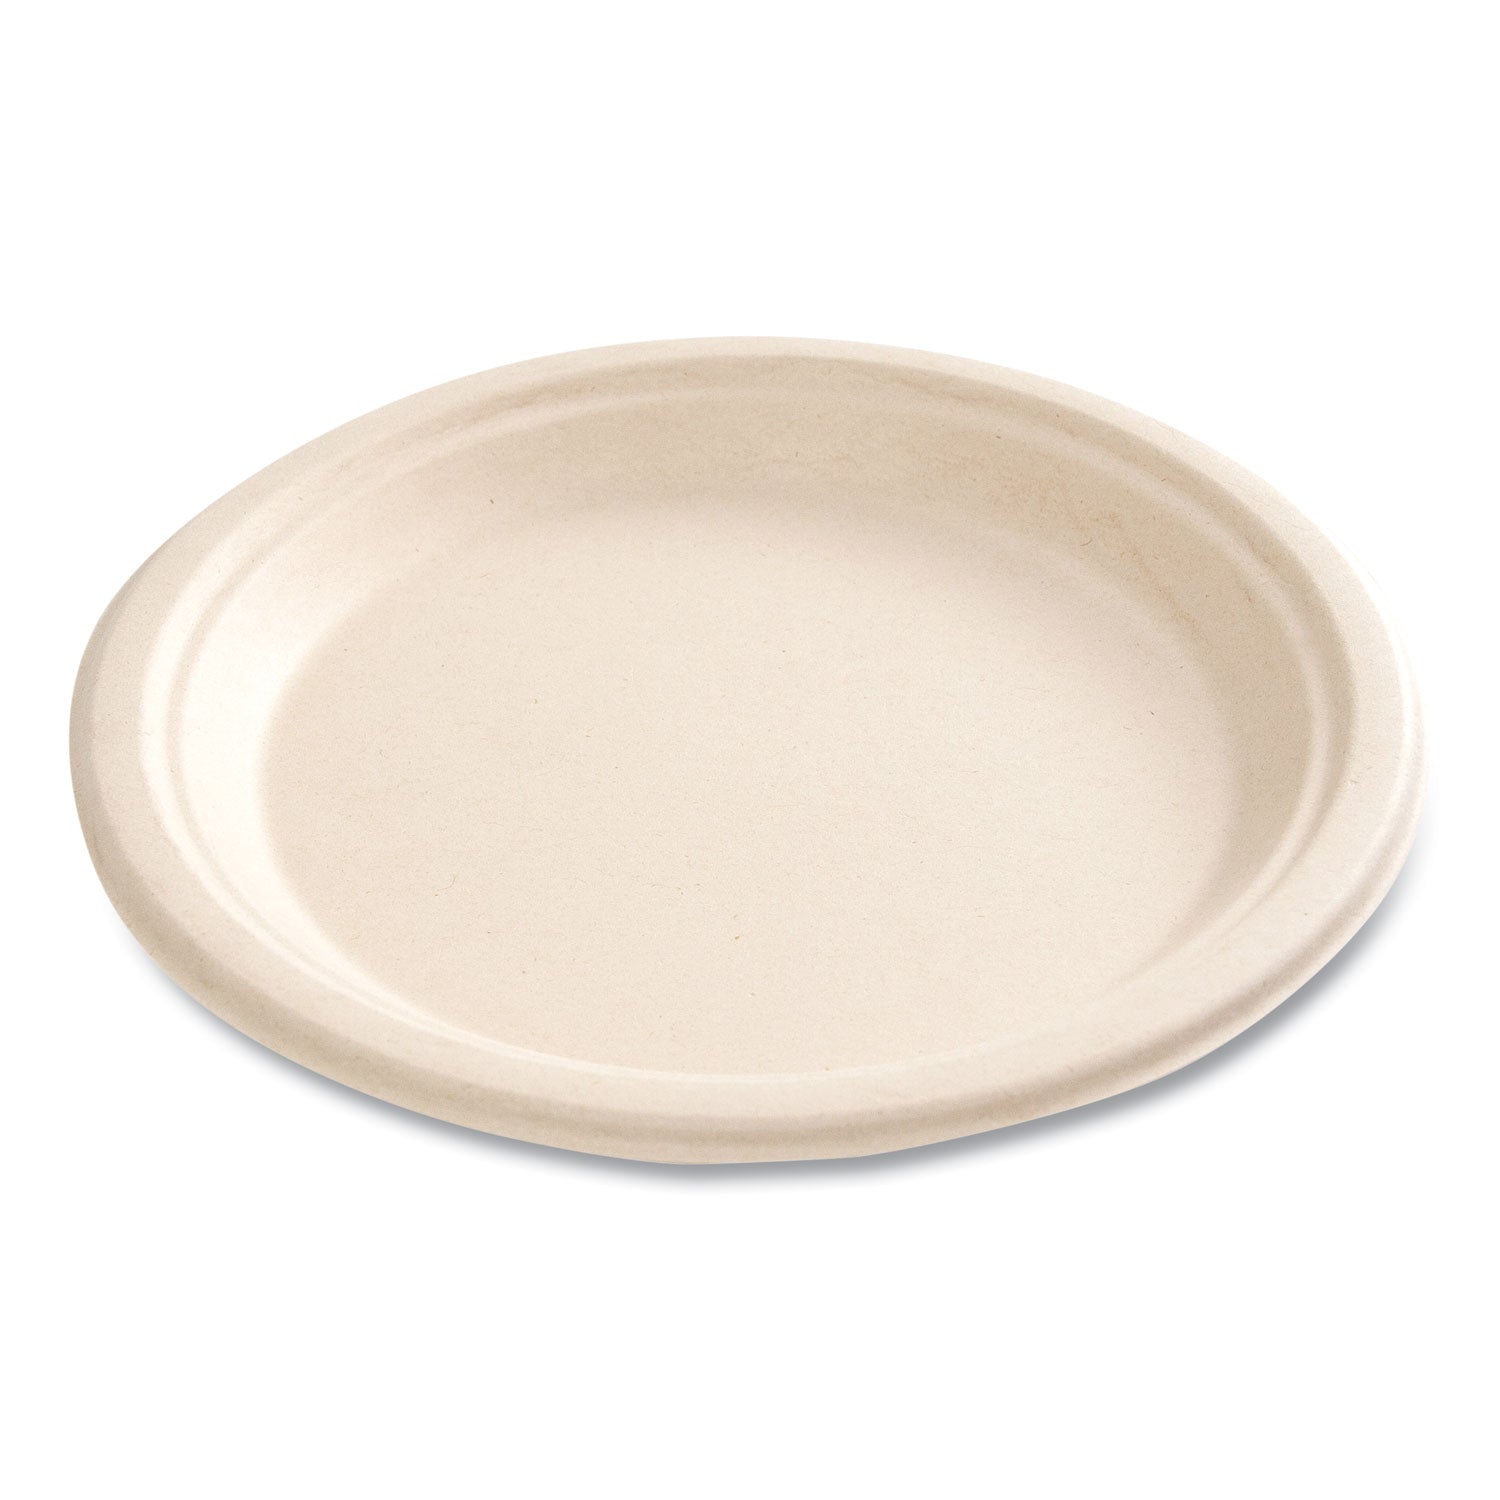 bagasse-pfas-free-dinnerware-plate-9-dia-tan-500-carton_bwkplate9npfa - 3